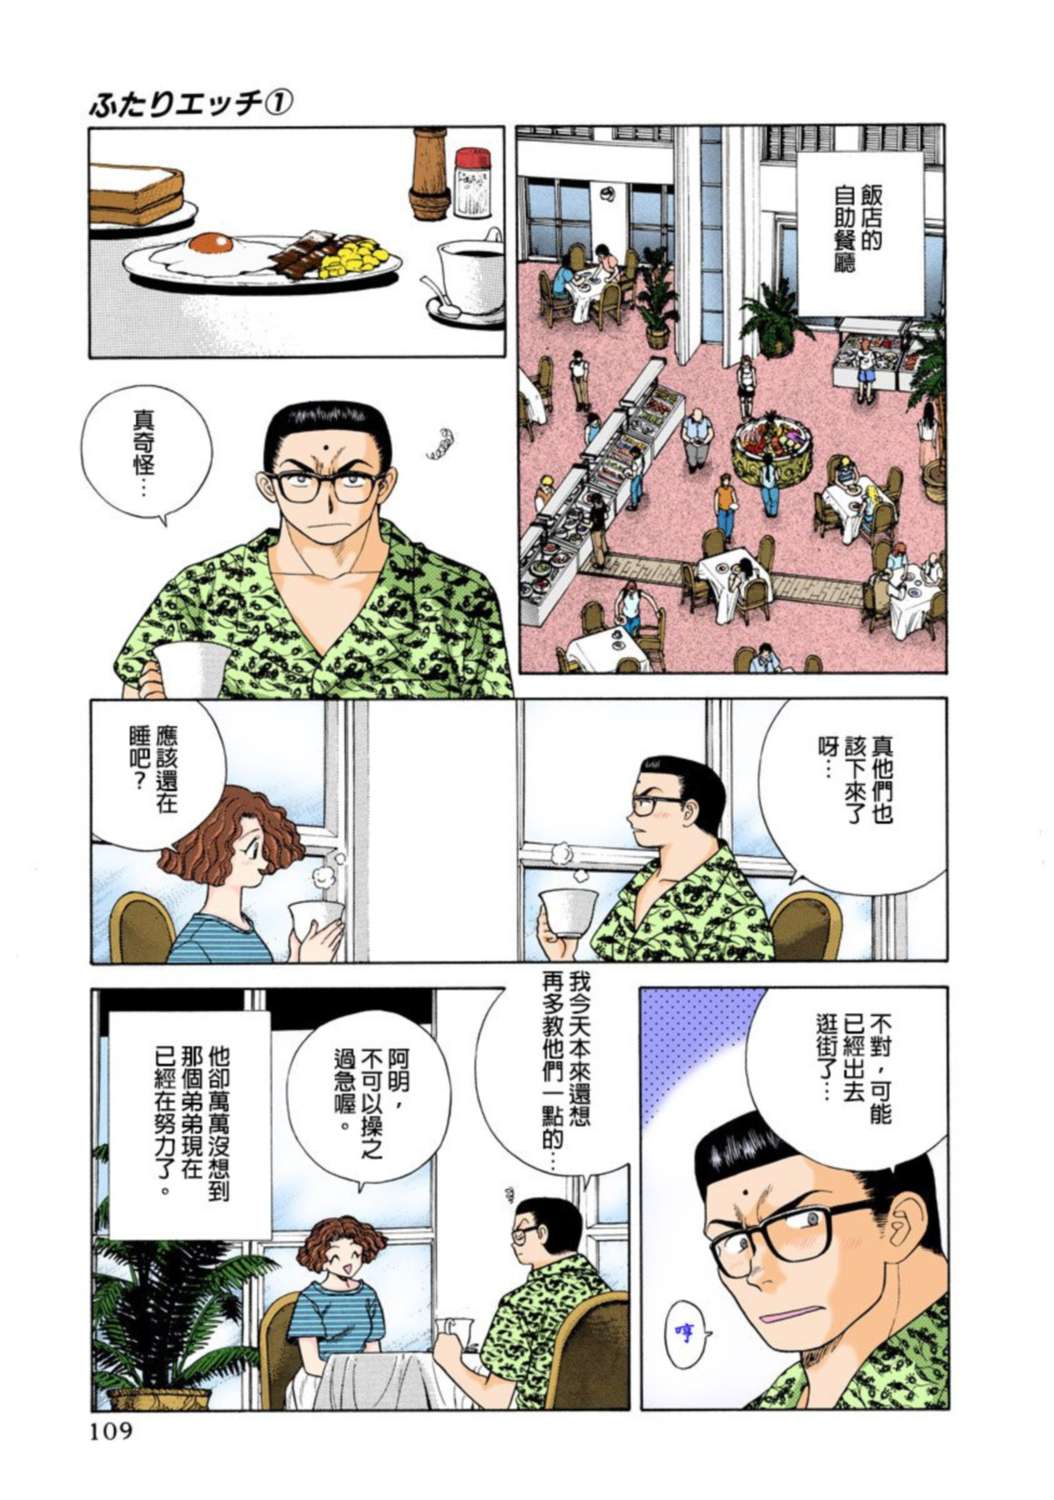 夫妻成长日记 全彩版漫画单行本 第1集-漫画DB